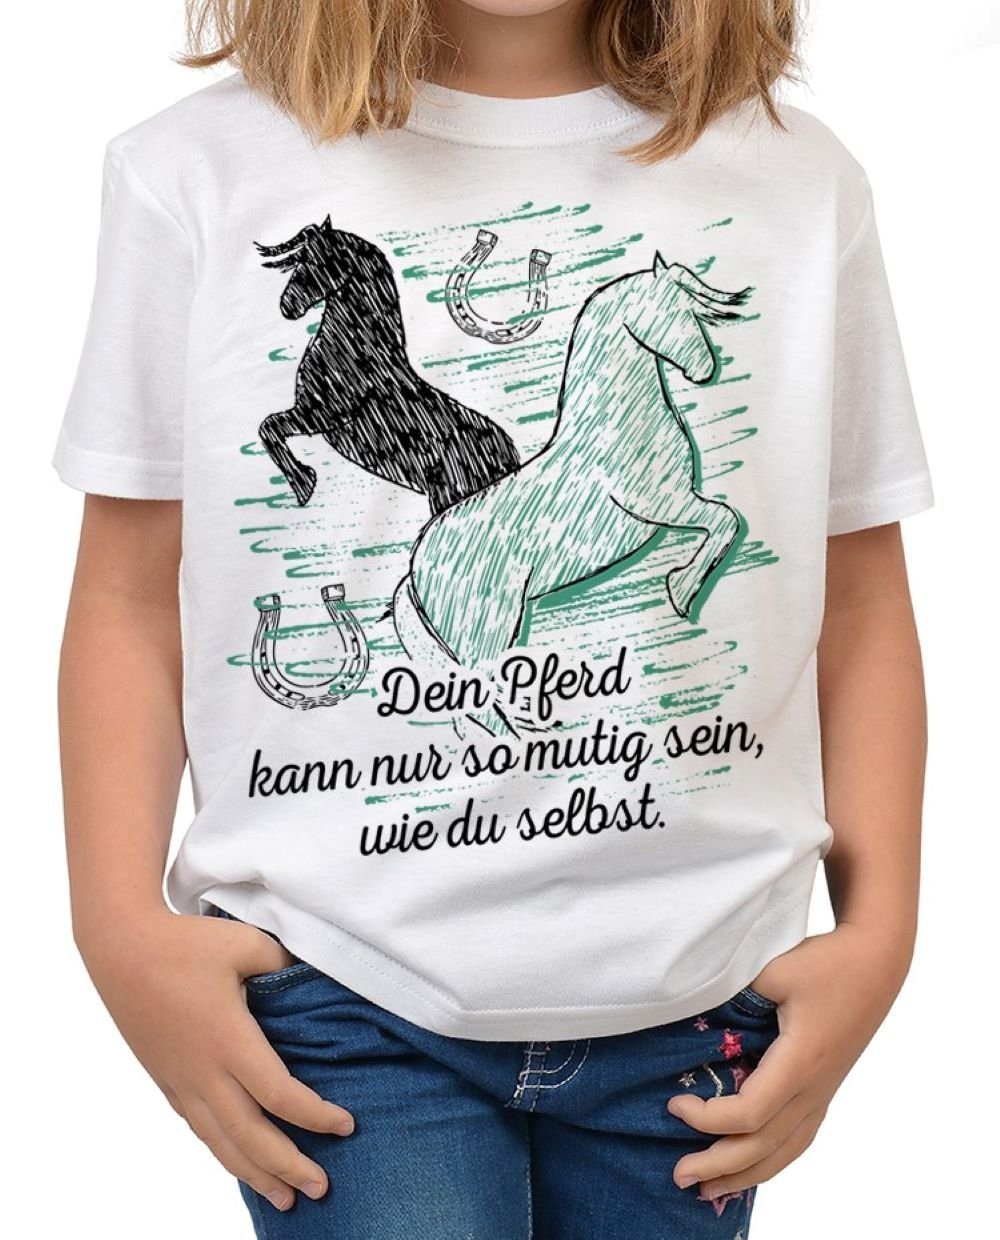 Tini Shirts Sprüche - Kinder Motiv nur Kindershirt sein, wie : T-Shirt Pferde Shirt du so Shirt Pferd kann selbst mutig Sprüche Dein Pferde